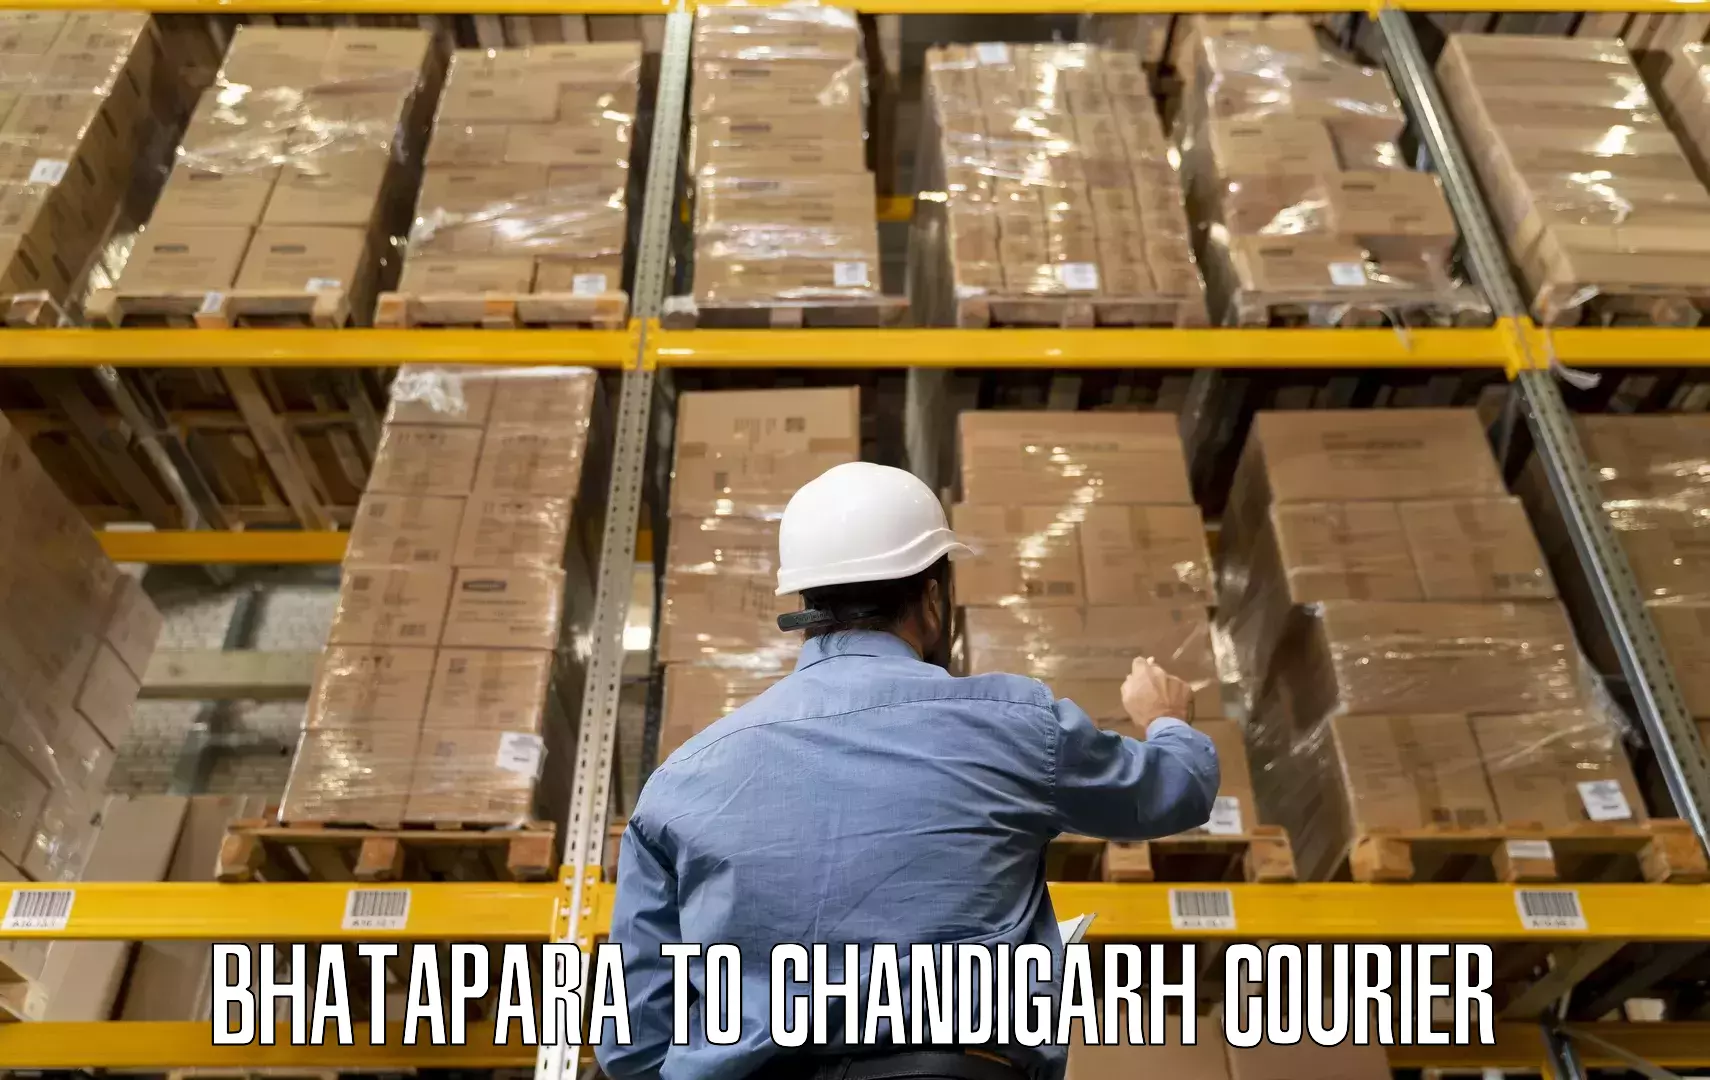 Professional home movers Bhatapara to Chandigarh